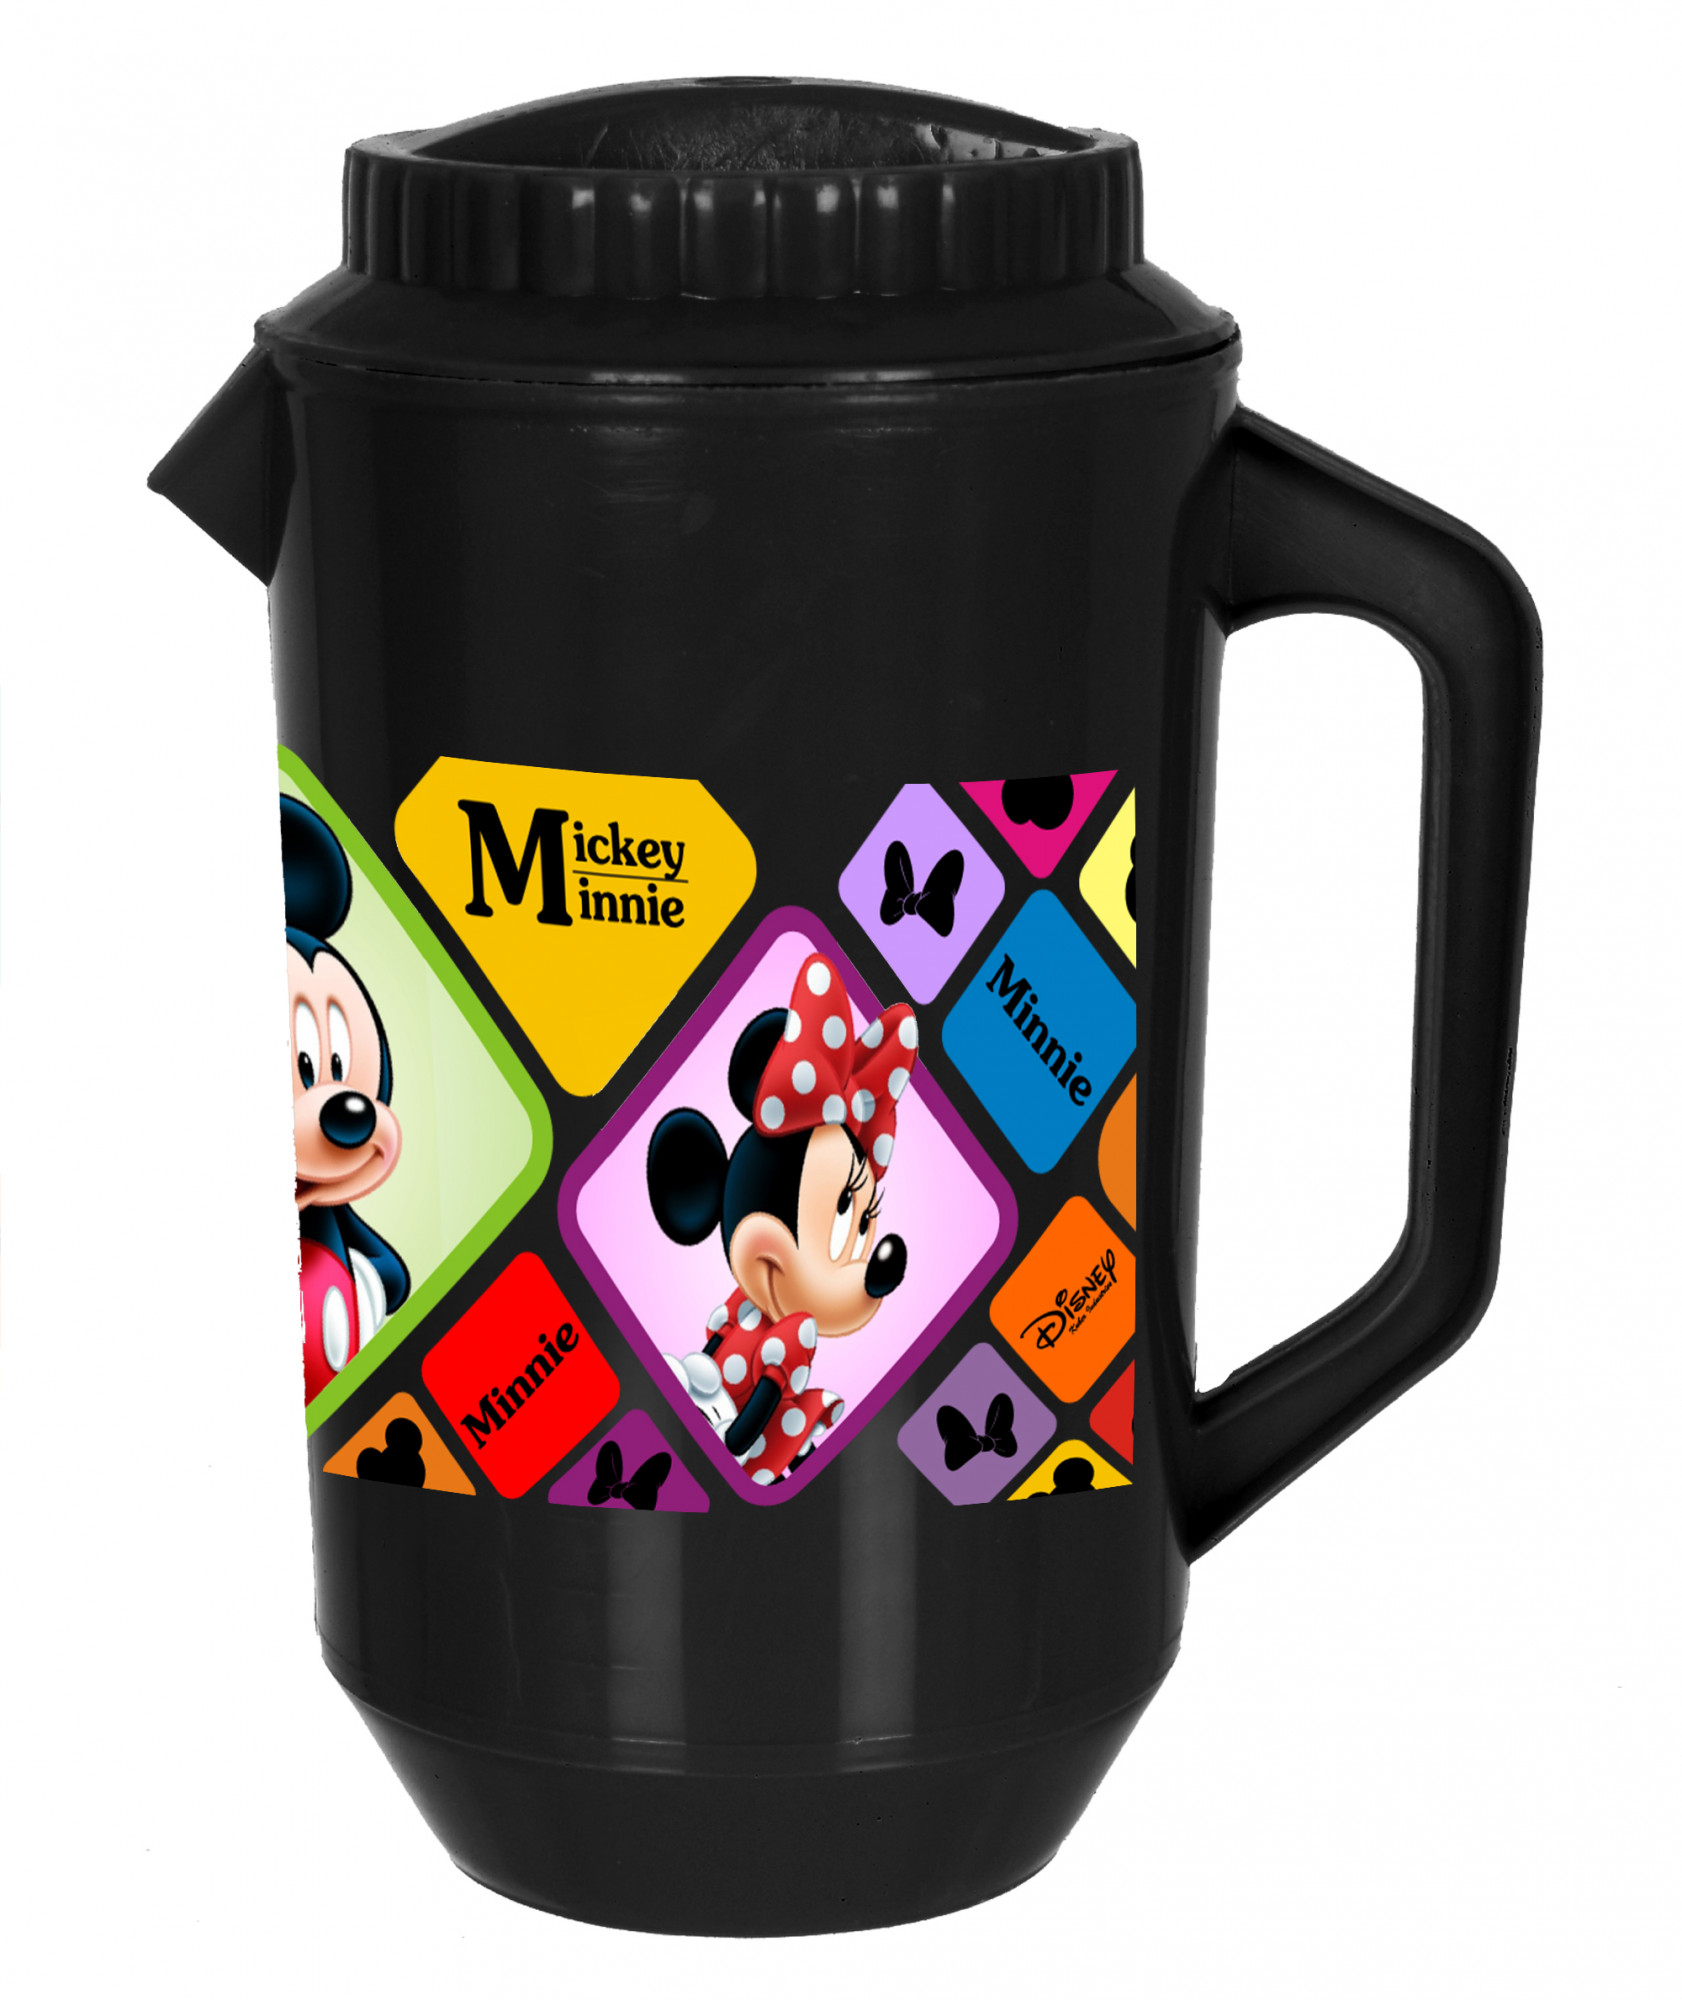 Kuber Industries Disney Mickey Minnie Print Unbreakable Multipurpose Plastic Water & Juice Jug With Lid,2 Ltr (Set Of 2, Blue & Black)